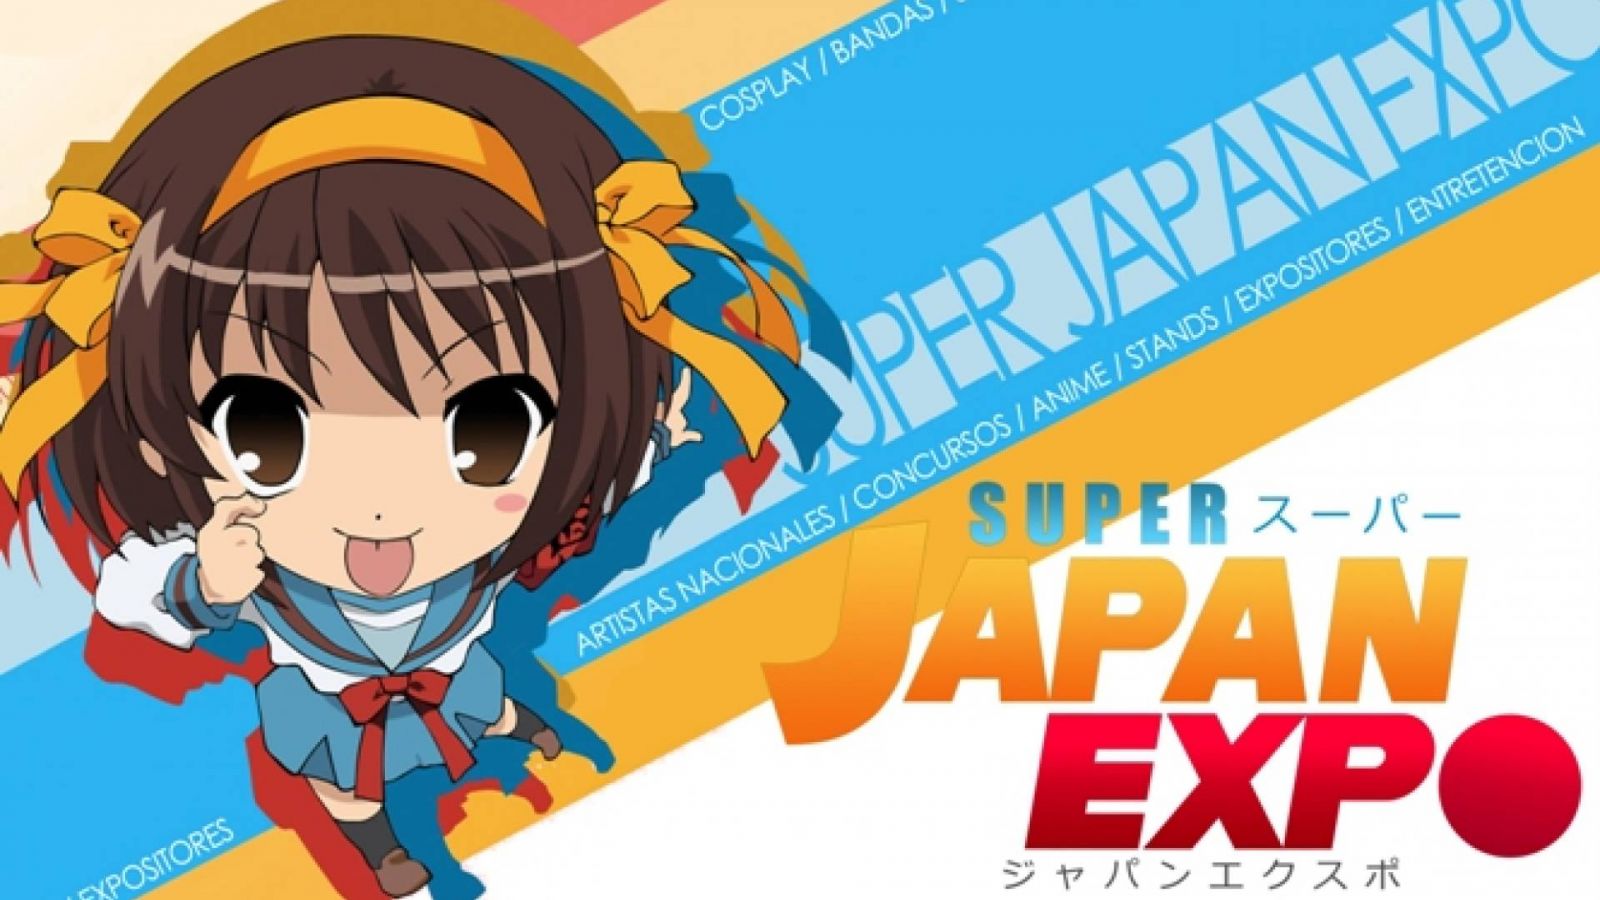 ¡Gana una entrada para la Super Japan Expo de Chile! © Super Japan Expo